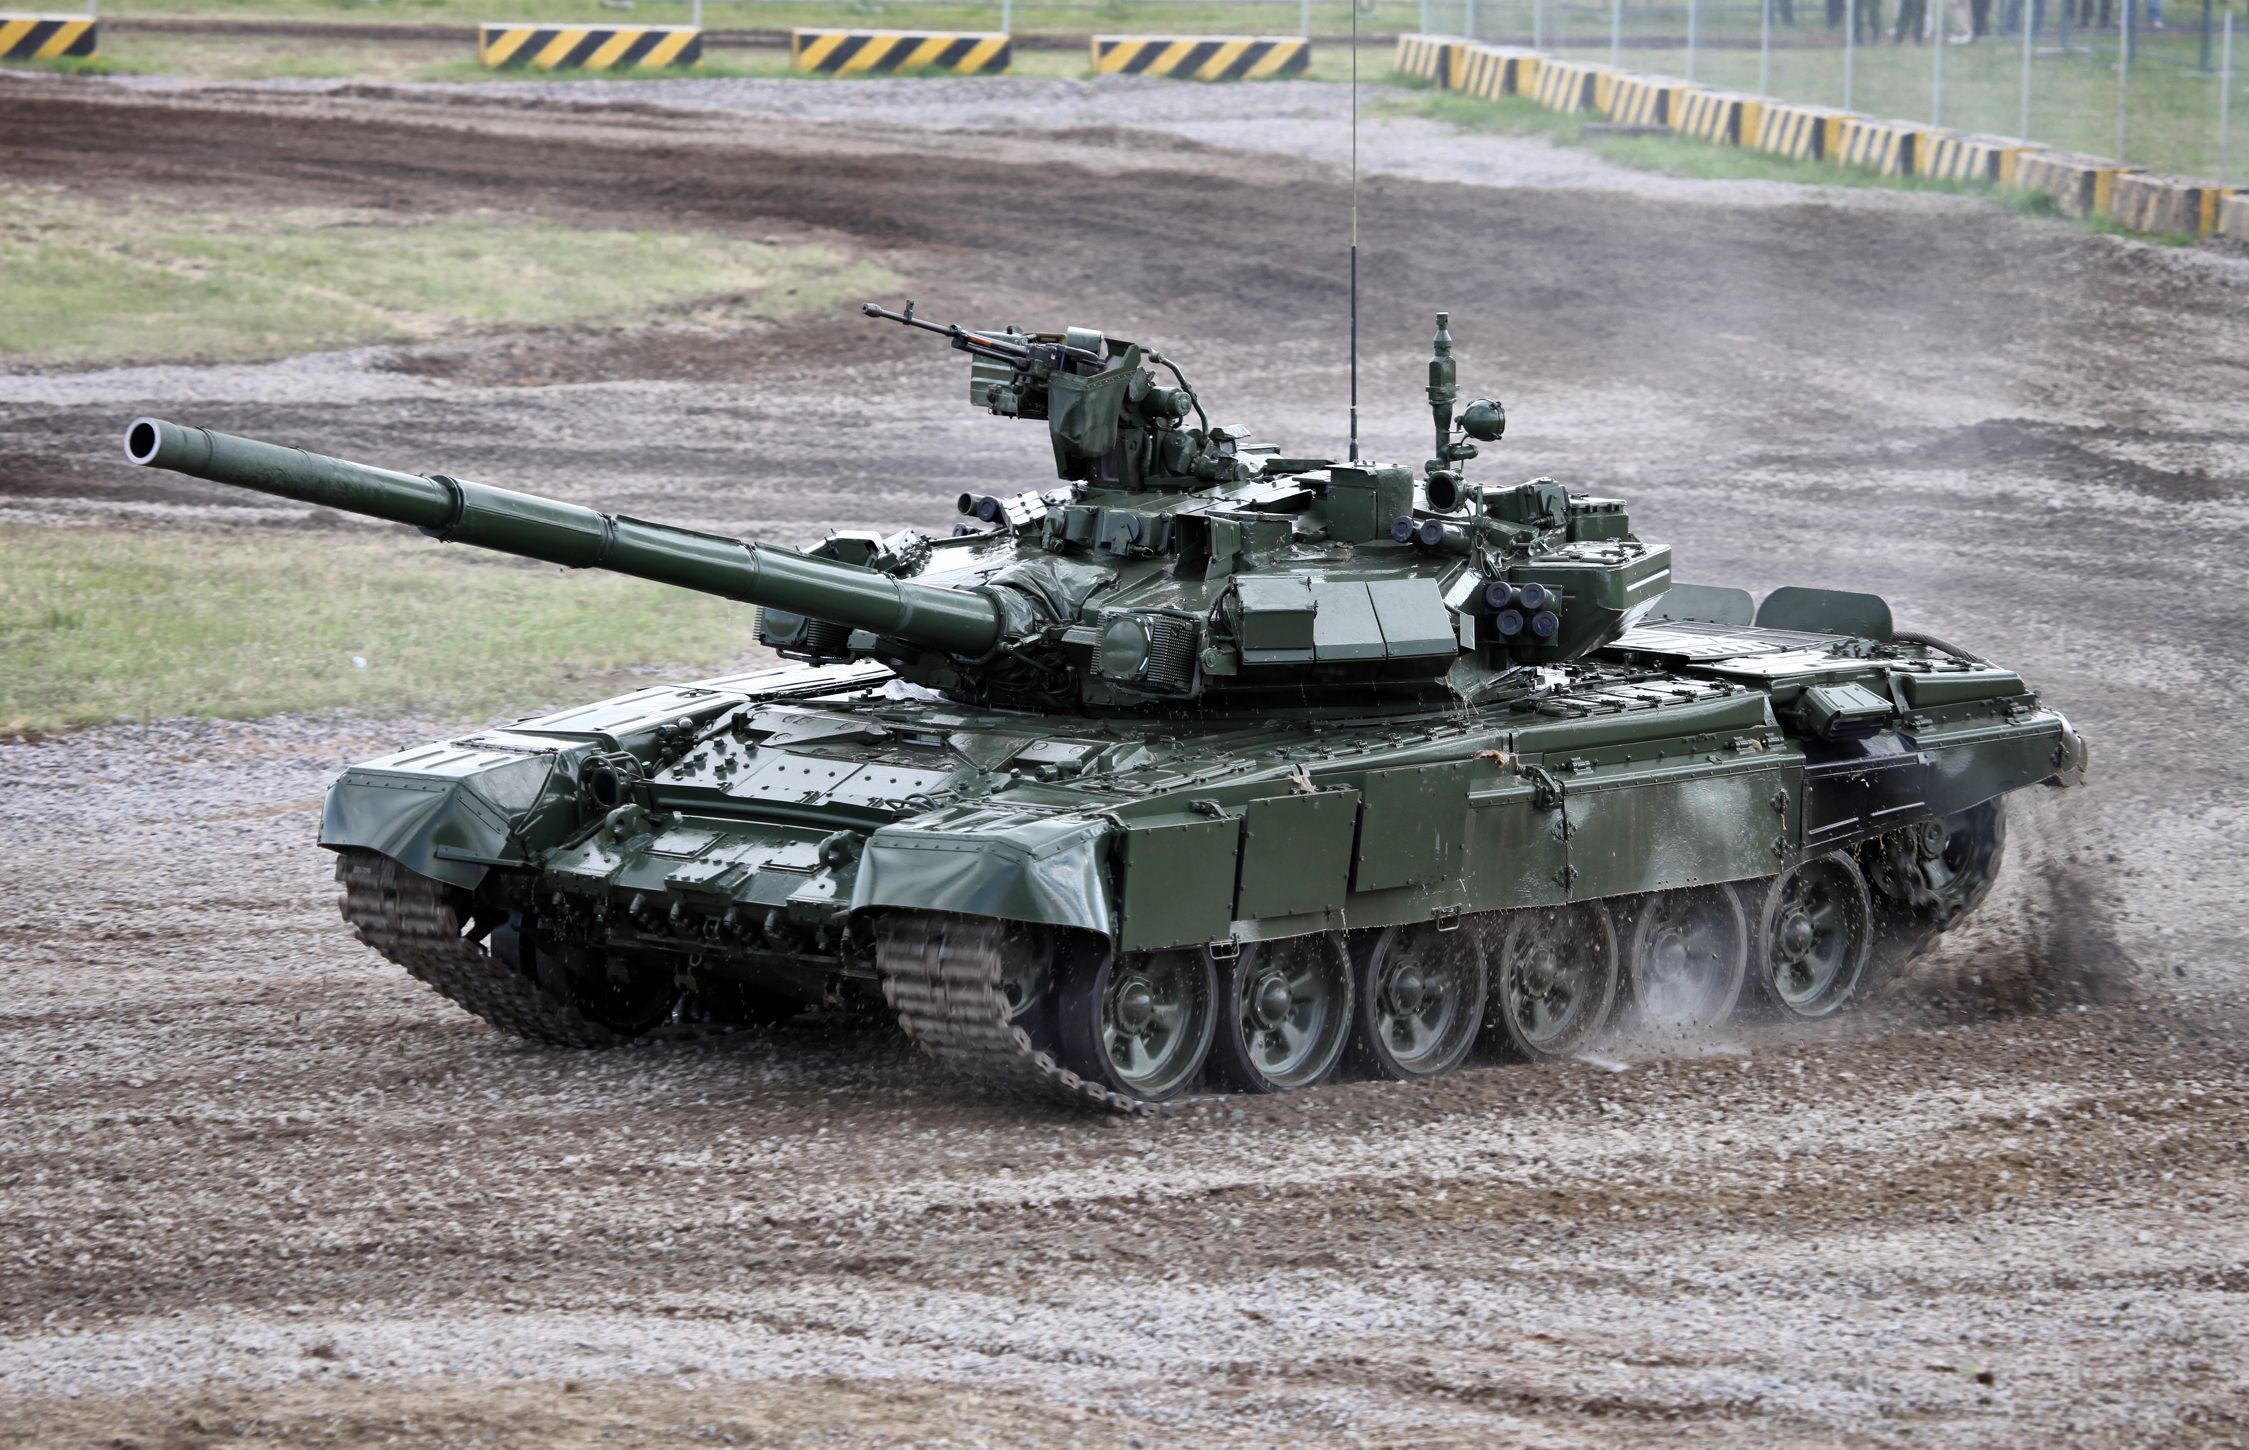 RUSSIAN T-90 TANK weapon military tanks ri wallpaper | 2249x1450 ...